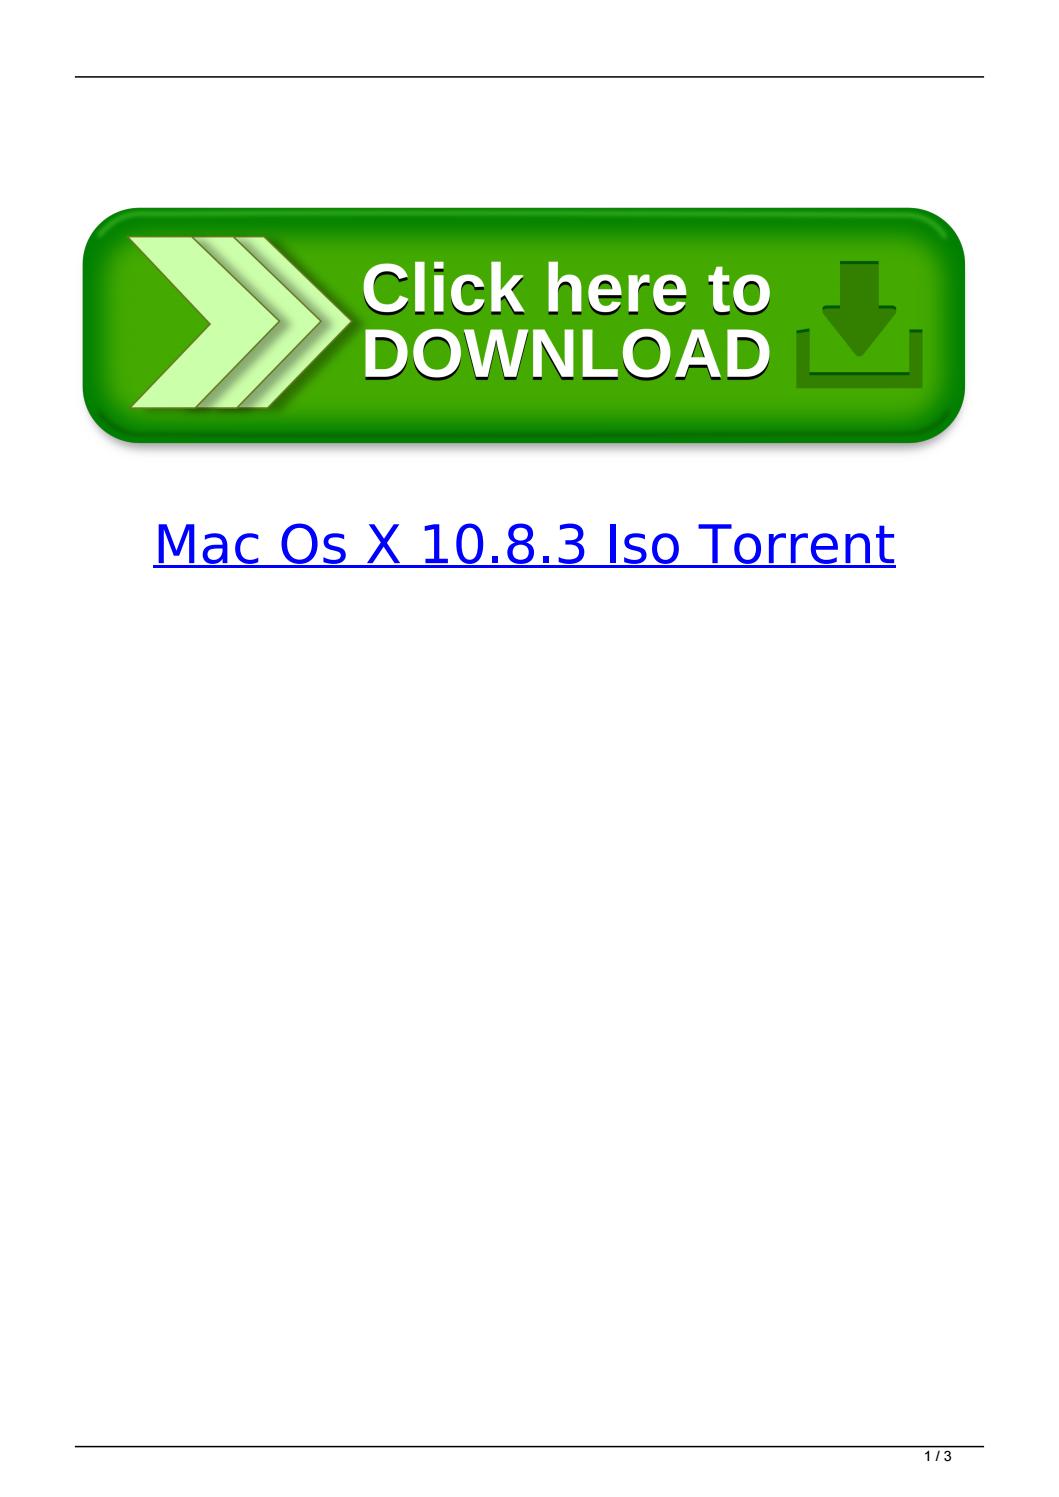 Mountain Lion Os X 10.7.x Rar Dmg